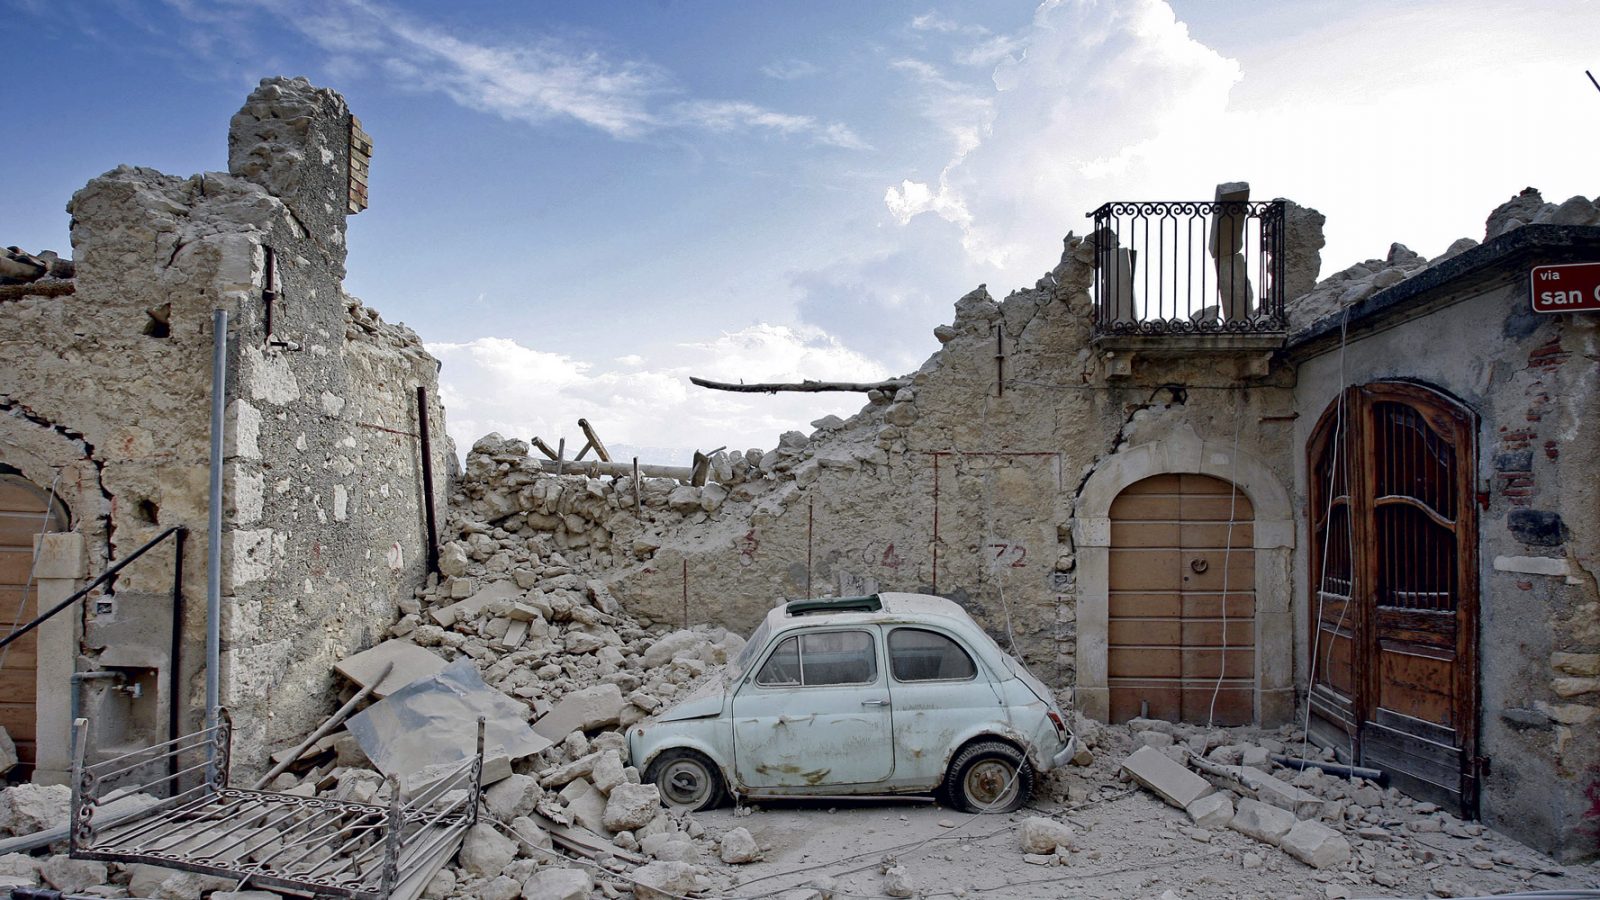 Un’immagine del terremoto che nel 2009 colpì L’Aquila, causando 309 vittime, 1.600 feriti e più di 10 miliardi di euro di danni stimati (fonte Ansa, La strada racconta, 2018)